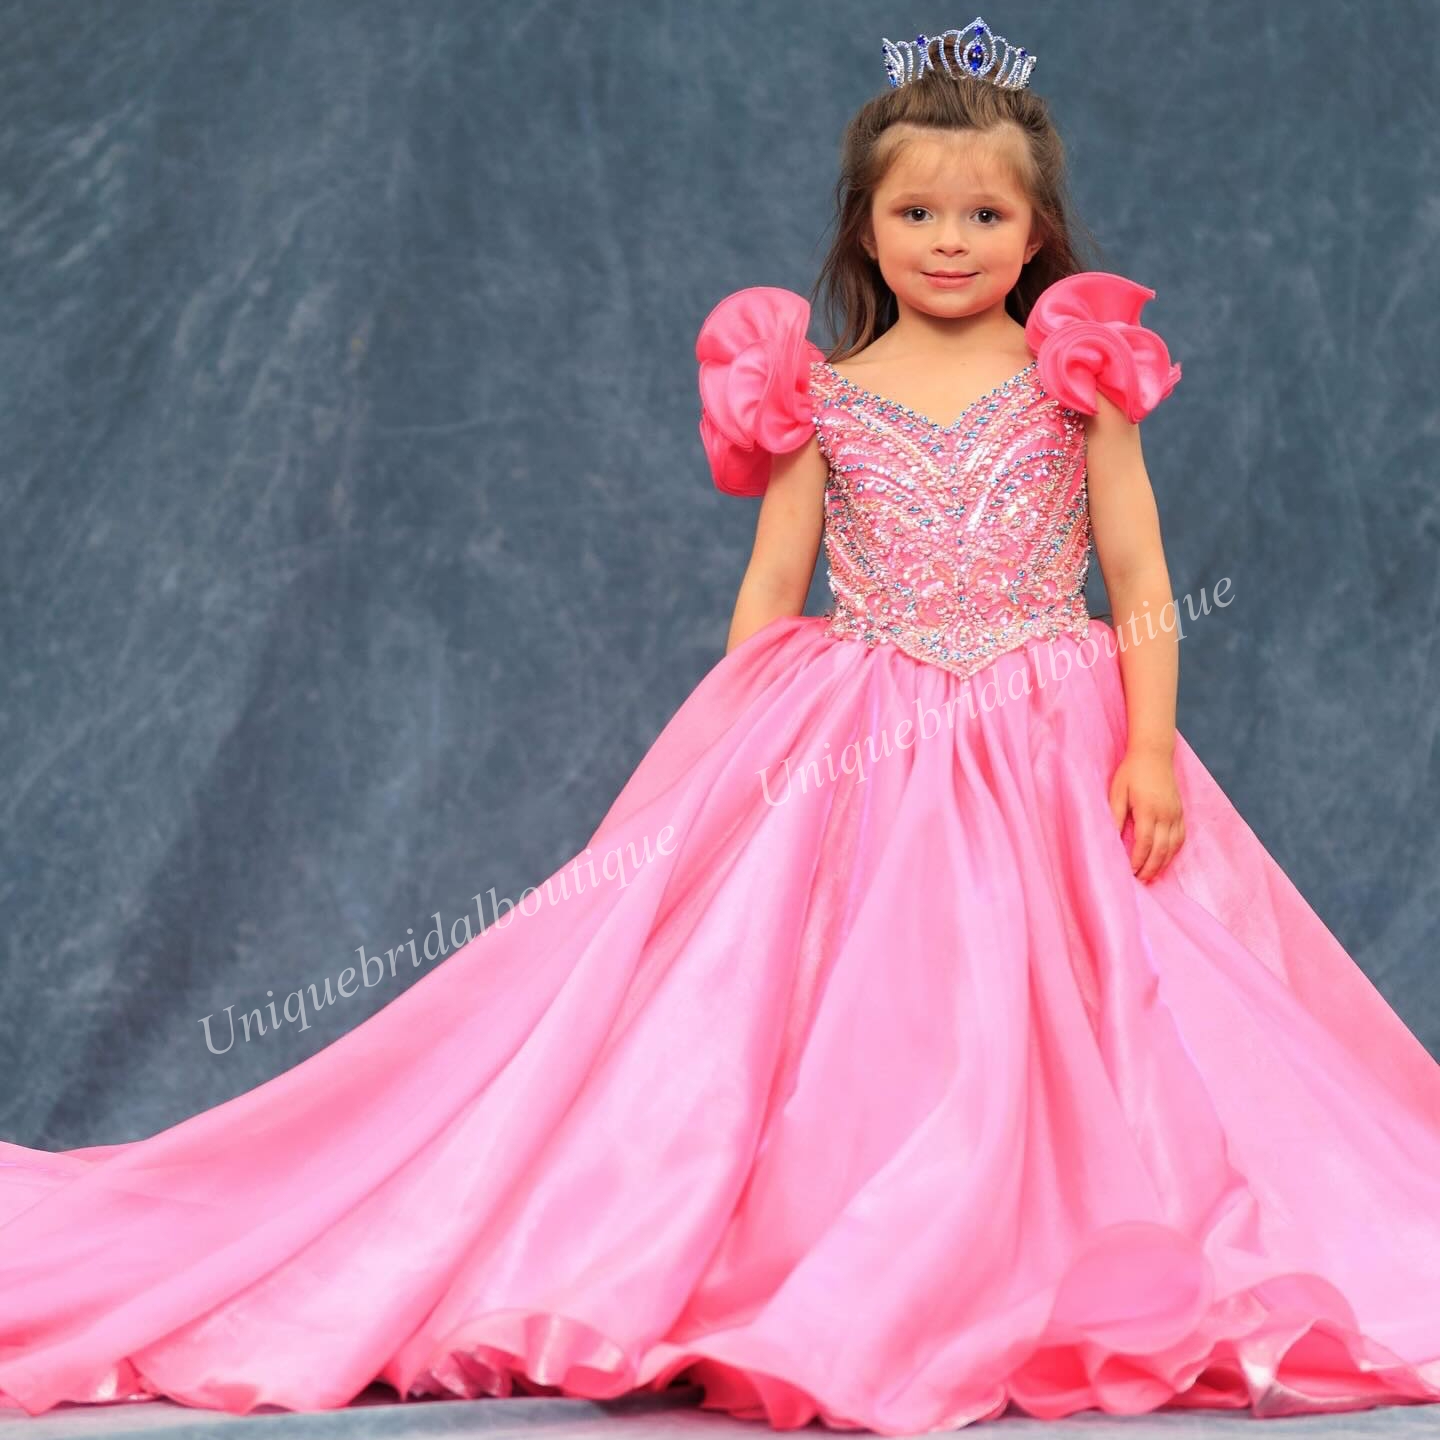 Hot Pink Girl Controsel sukienka nastolatki metal organza mały dzieciak księżniczka urodziny formalny suknia imprezowa